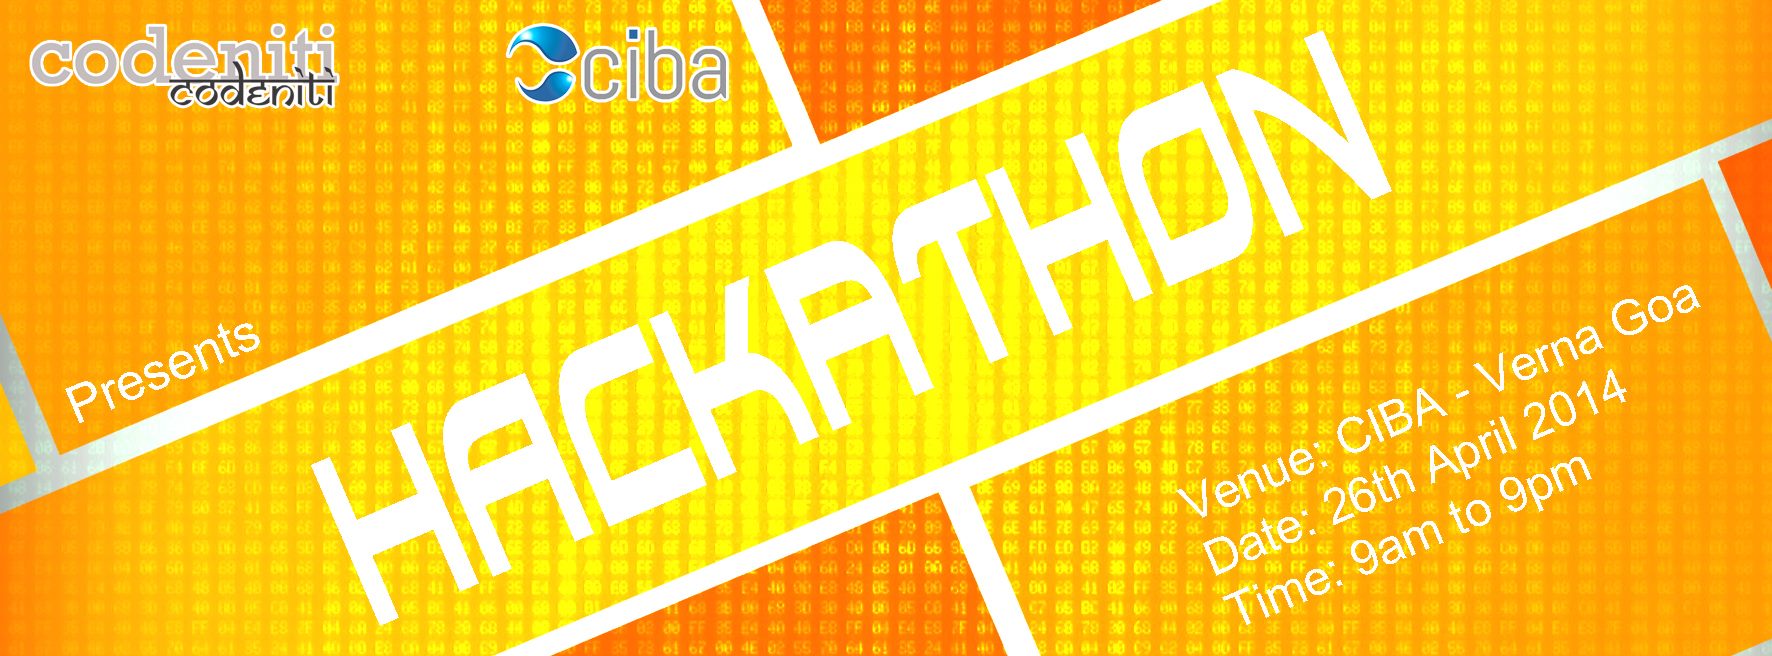 ciba-Codeniti Hackathon Goa